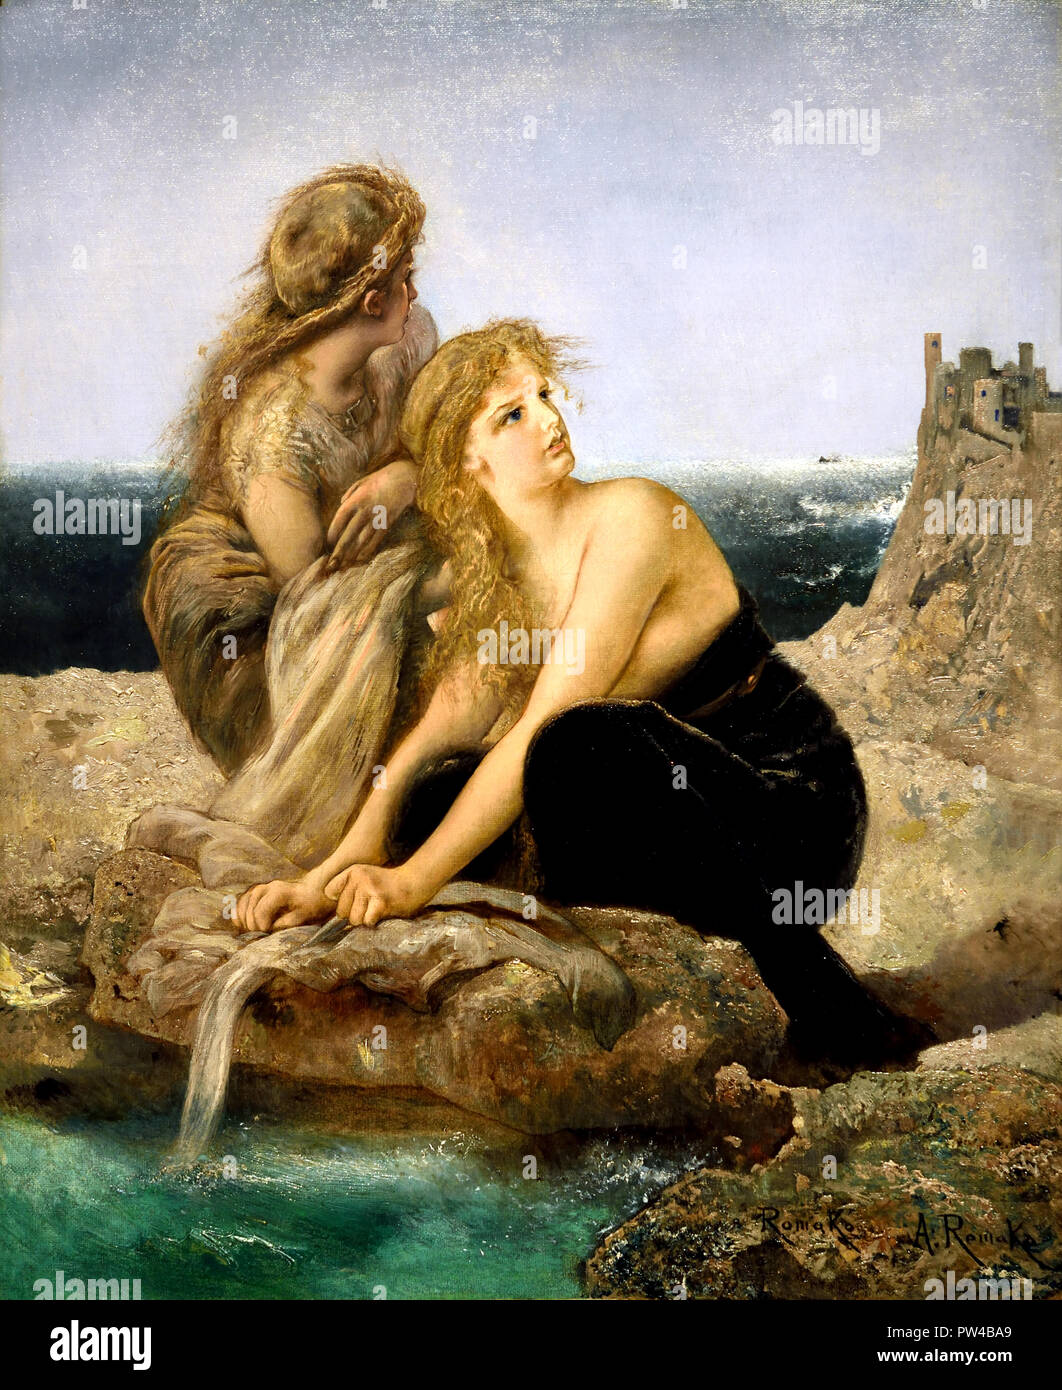 Nausicaa vor der Entdeckung Odysseus 1876/77 von Anton Romako 1832 - 1889 österreichische Maler. Österreich. (Anton Romako war einer der großen Pioniere der Moderne) Stockfoto